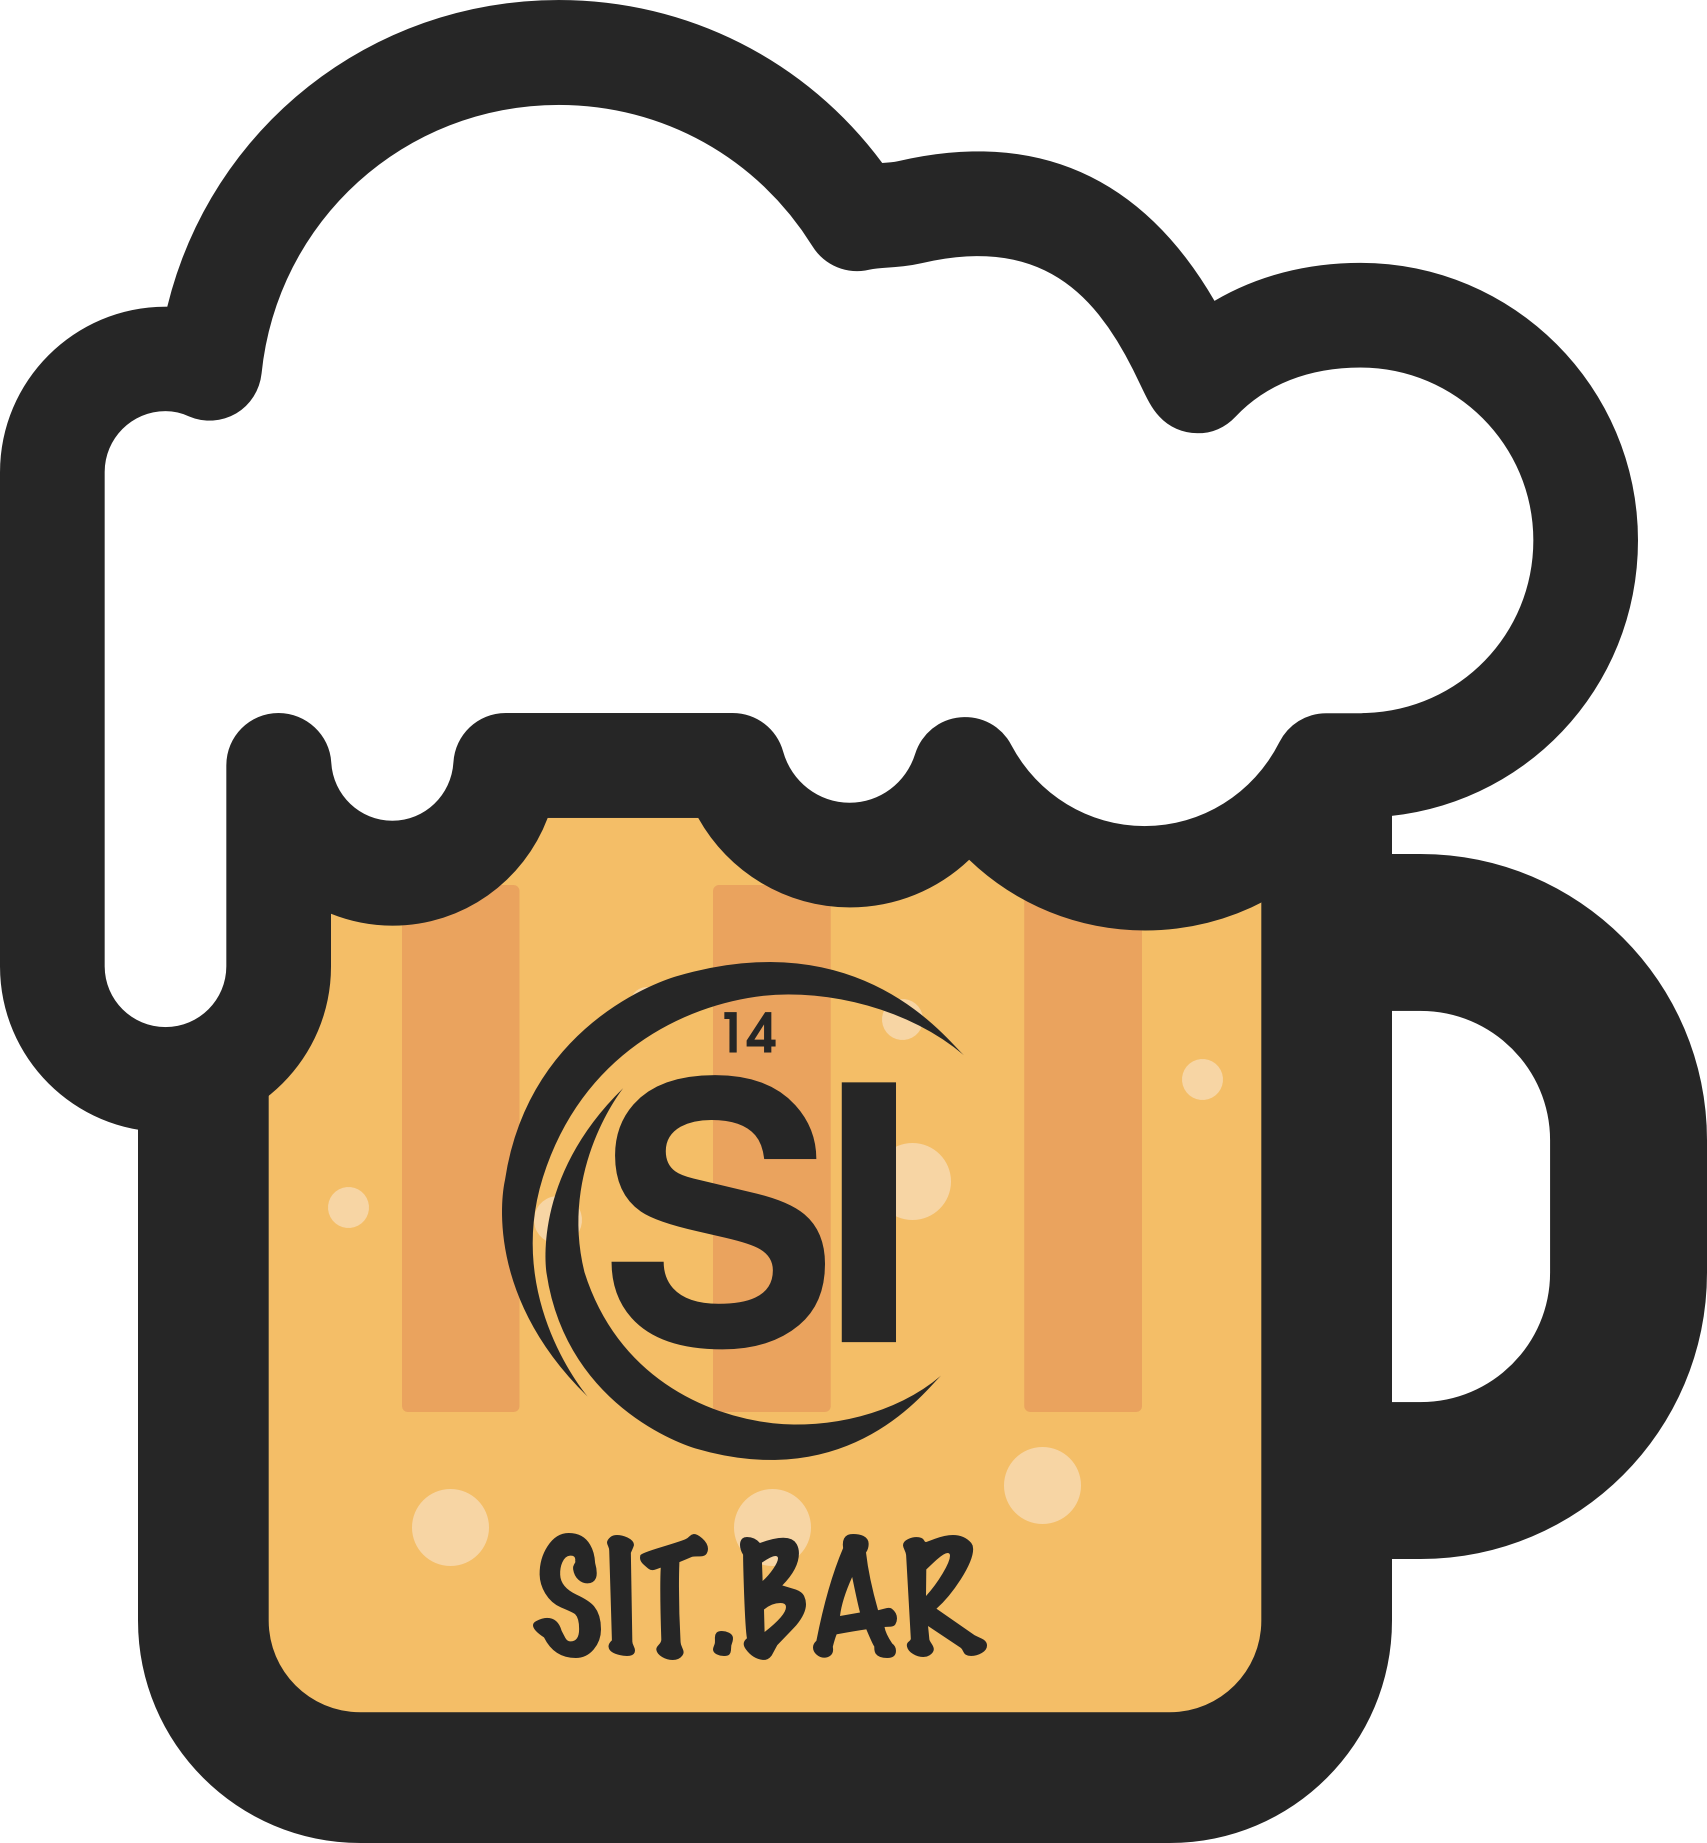 sit.bar